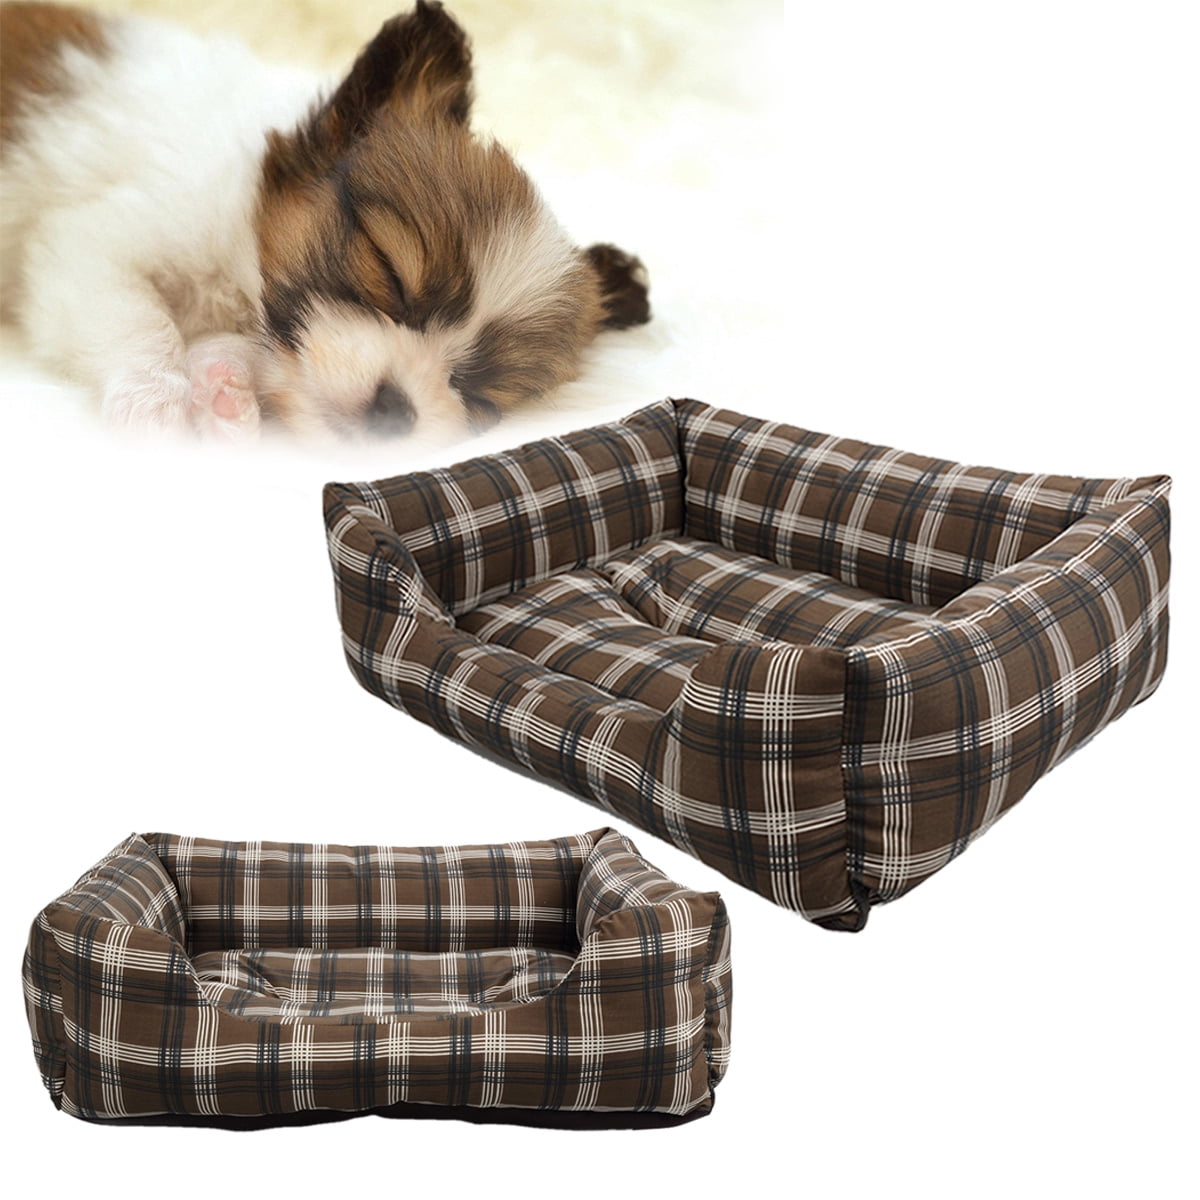 CoastaCloud Soft Washable Dog Cat Pet Bed Cushion ...